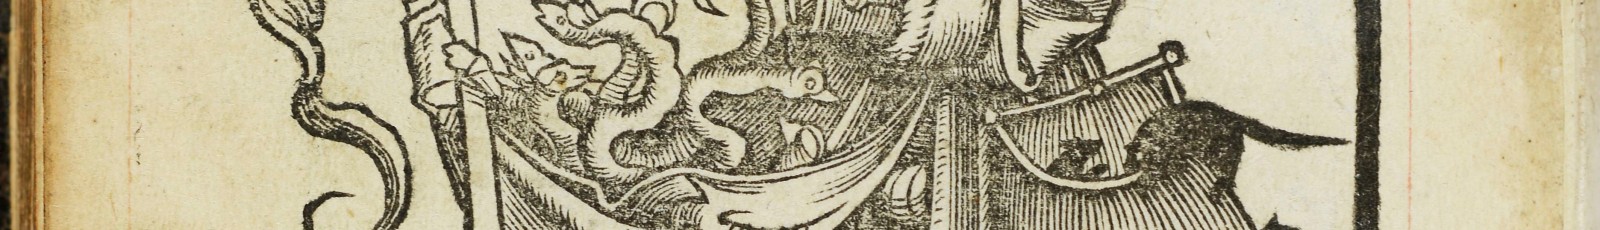 L'hérétique, de Gabriel Salmon, dans Apologia Petri Sutoris... Paris : Poncet le Preux, 1531. Bibliothèque Mazarine, 8°25504 [Res]